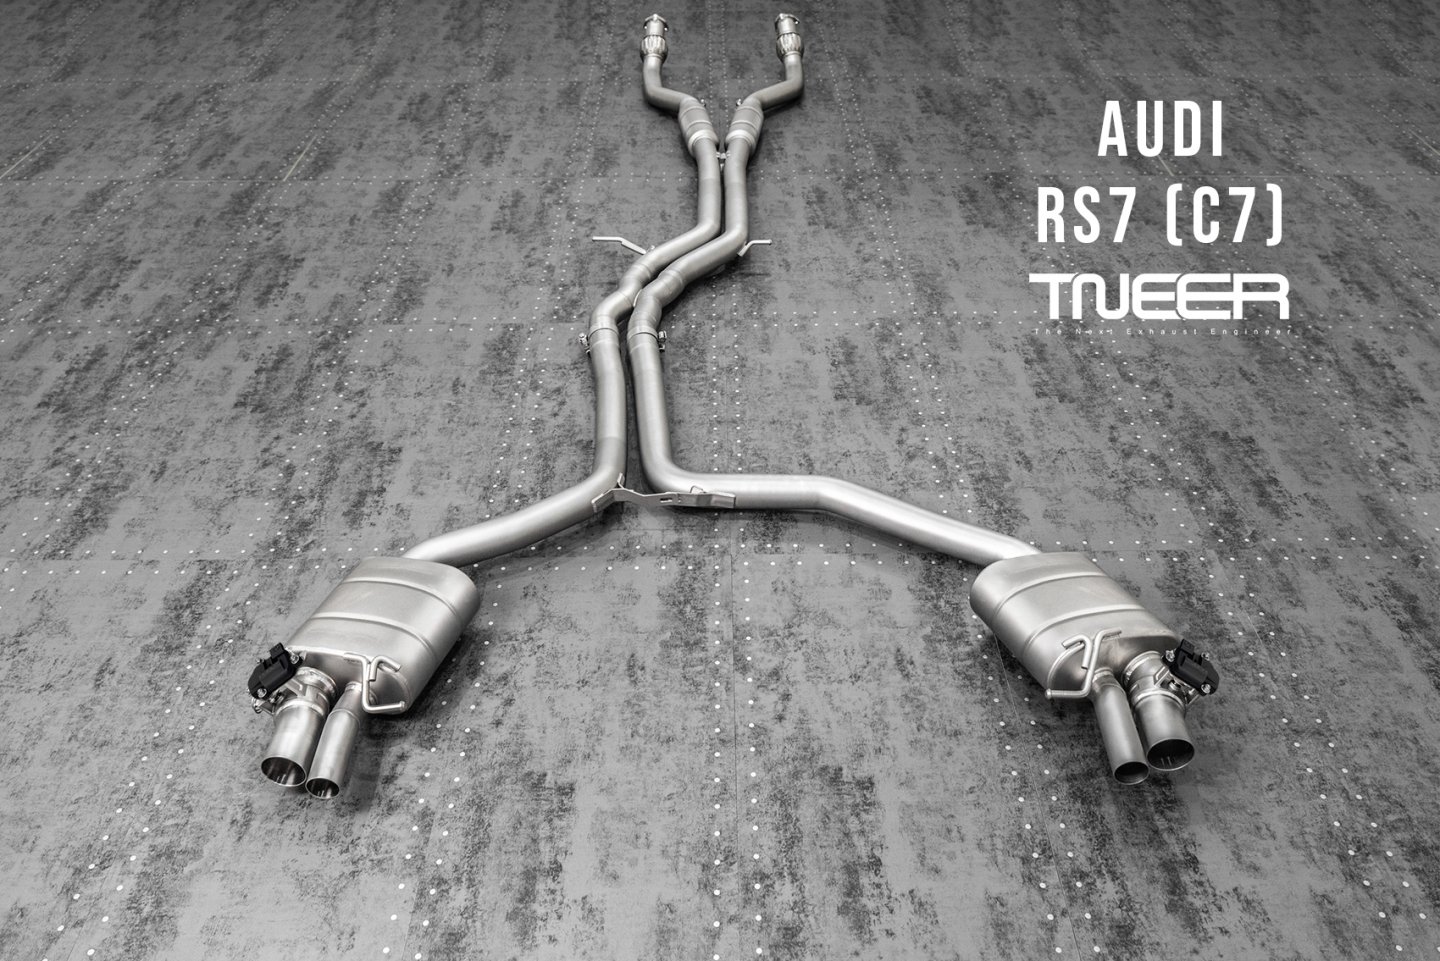 Audi RS6 (C7) 4.0 TFSI V8 TNEER Catless Downpipe